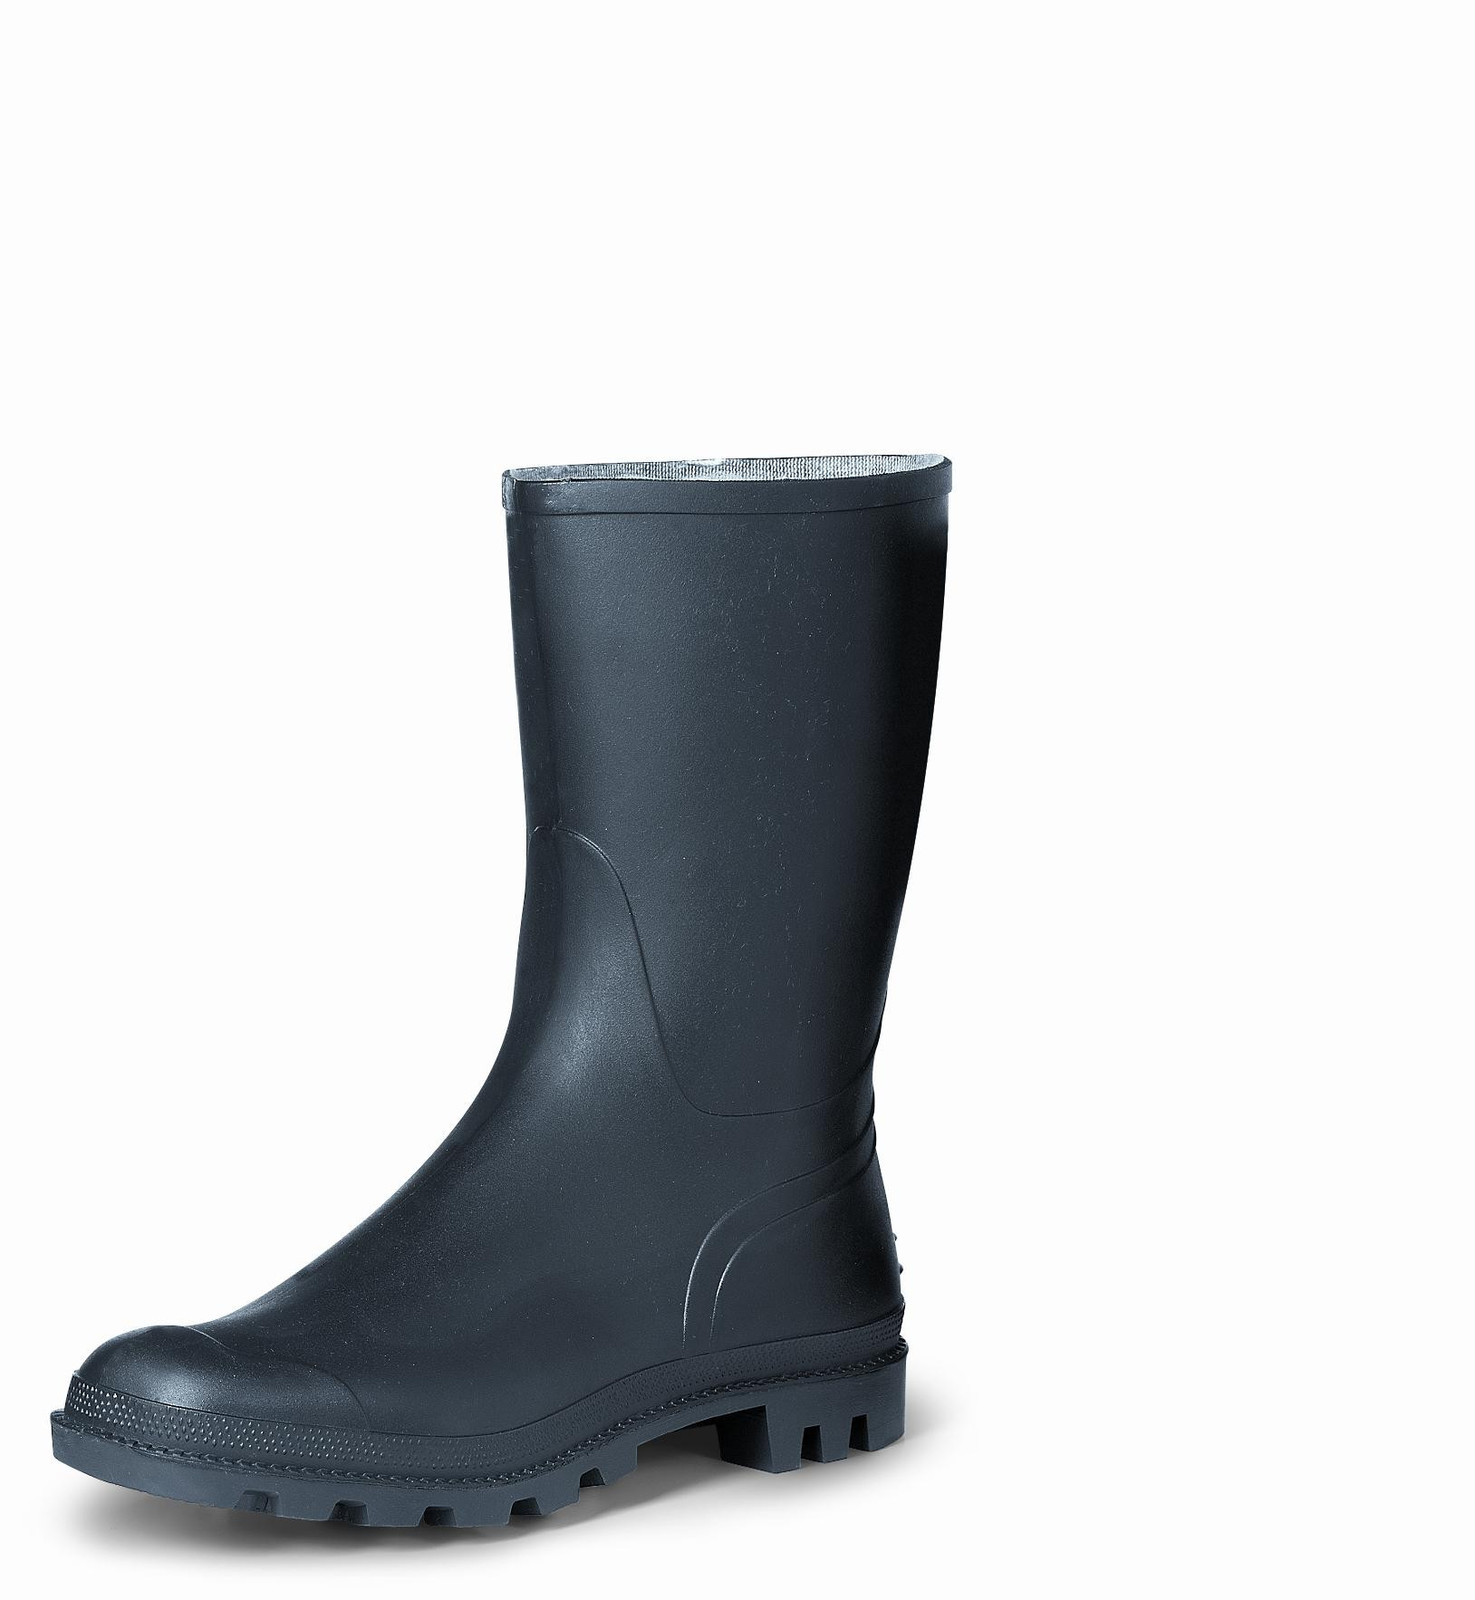 Gumáky Boots Troncheto PVC nízke - veľkosť: 44, farba: čierna